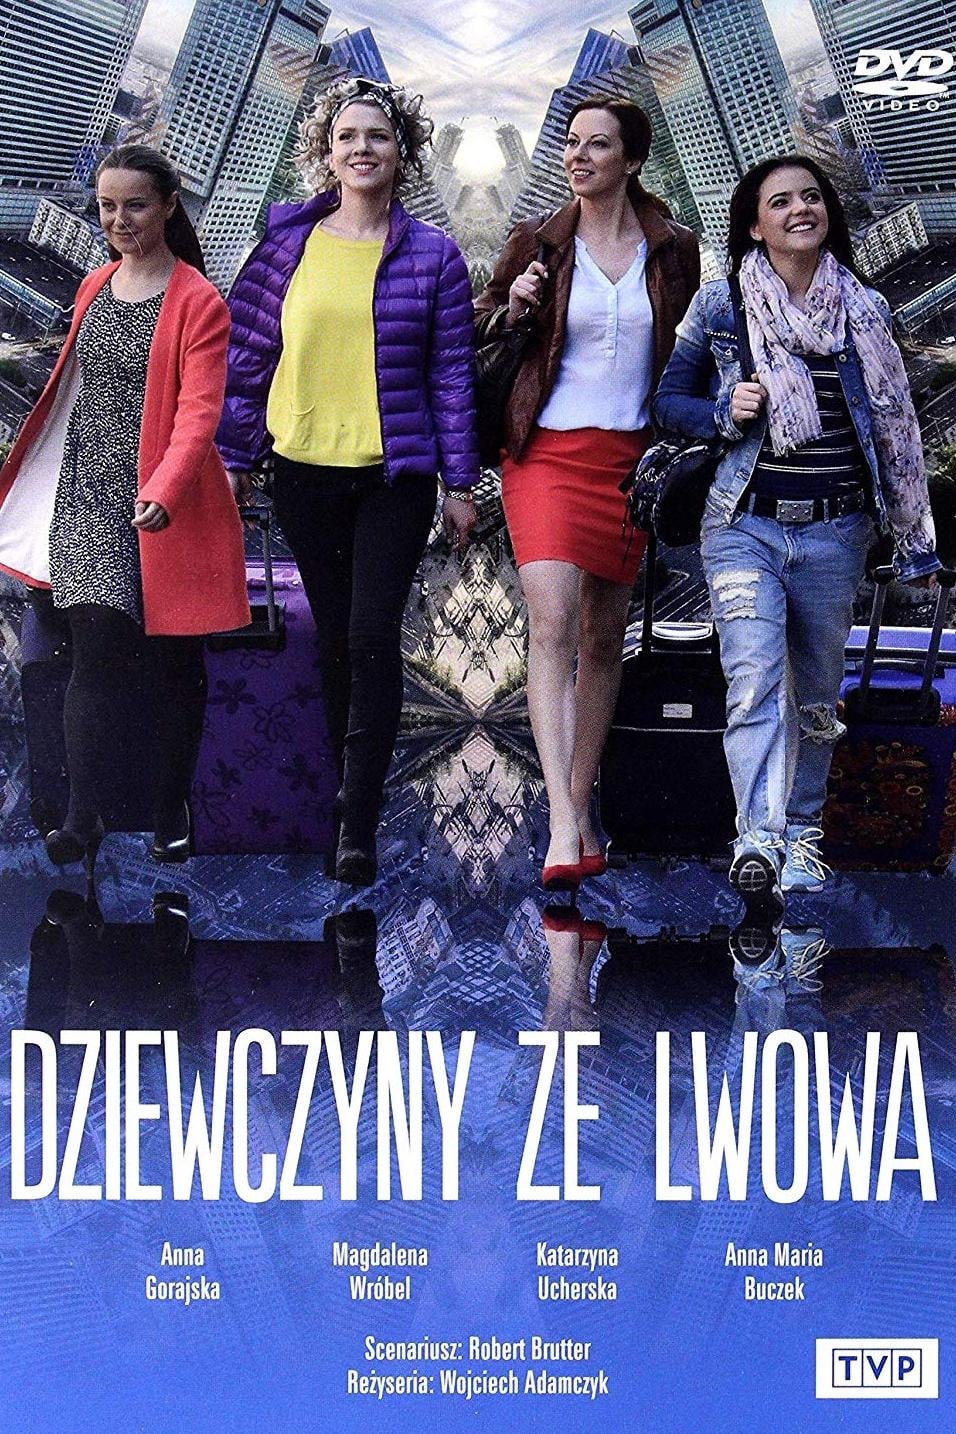 Dziewczyny ze Lwowa